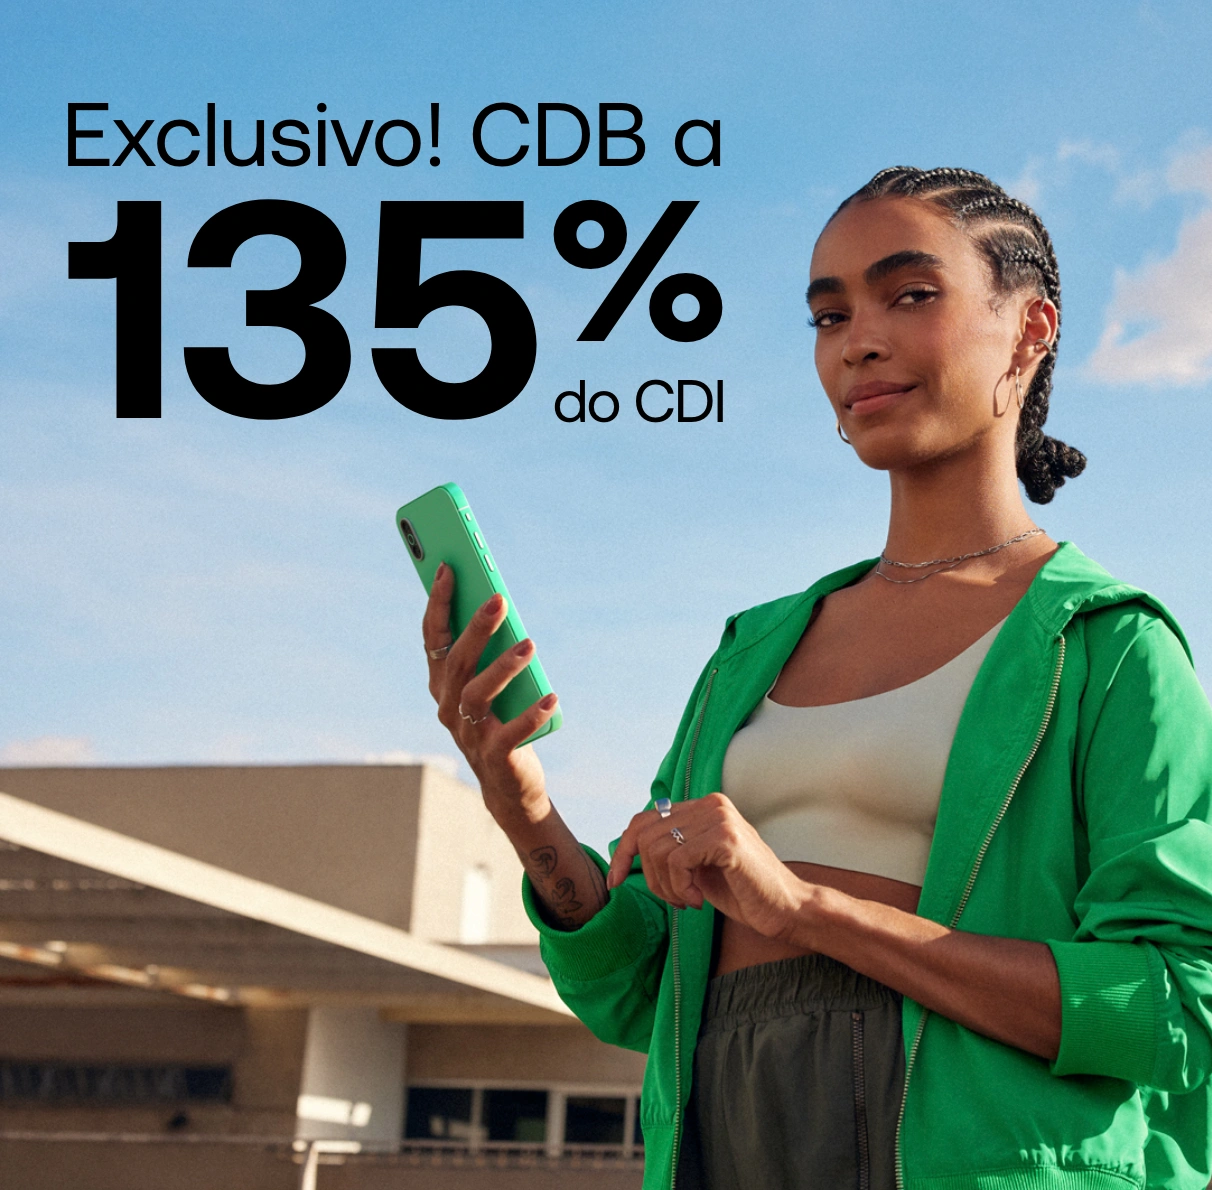 CDB 135% do CDI